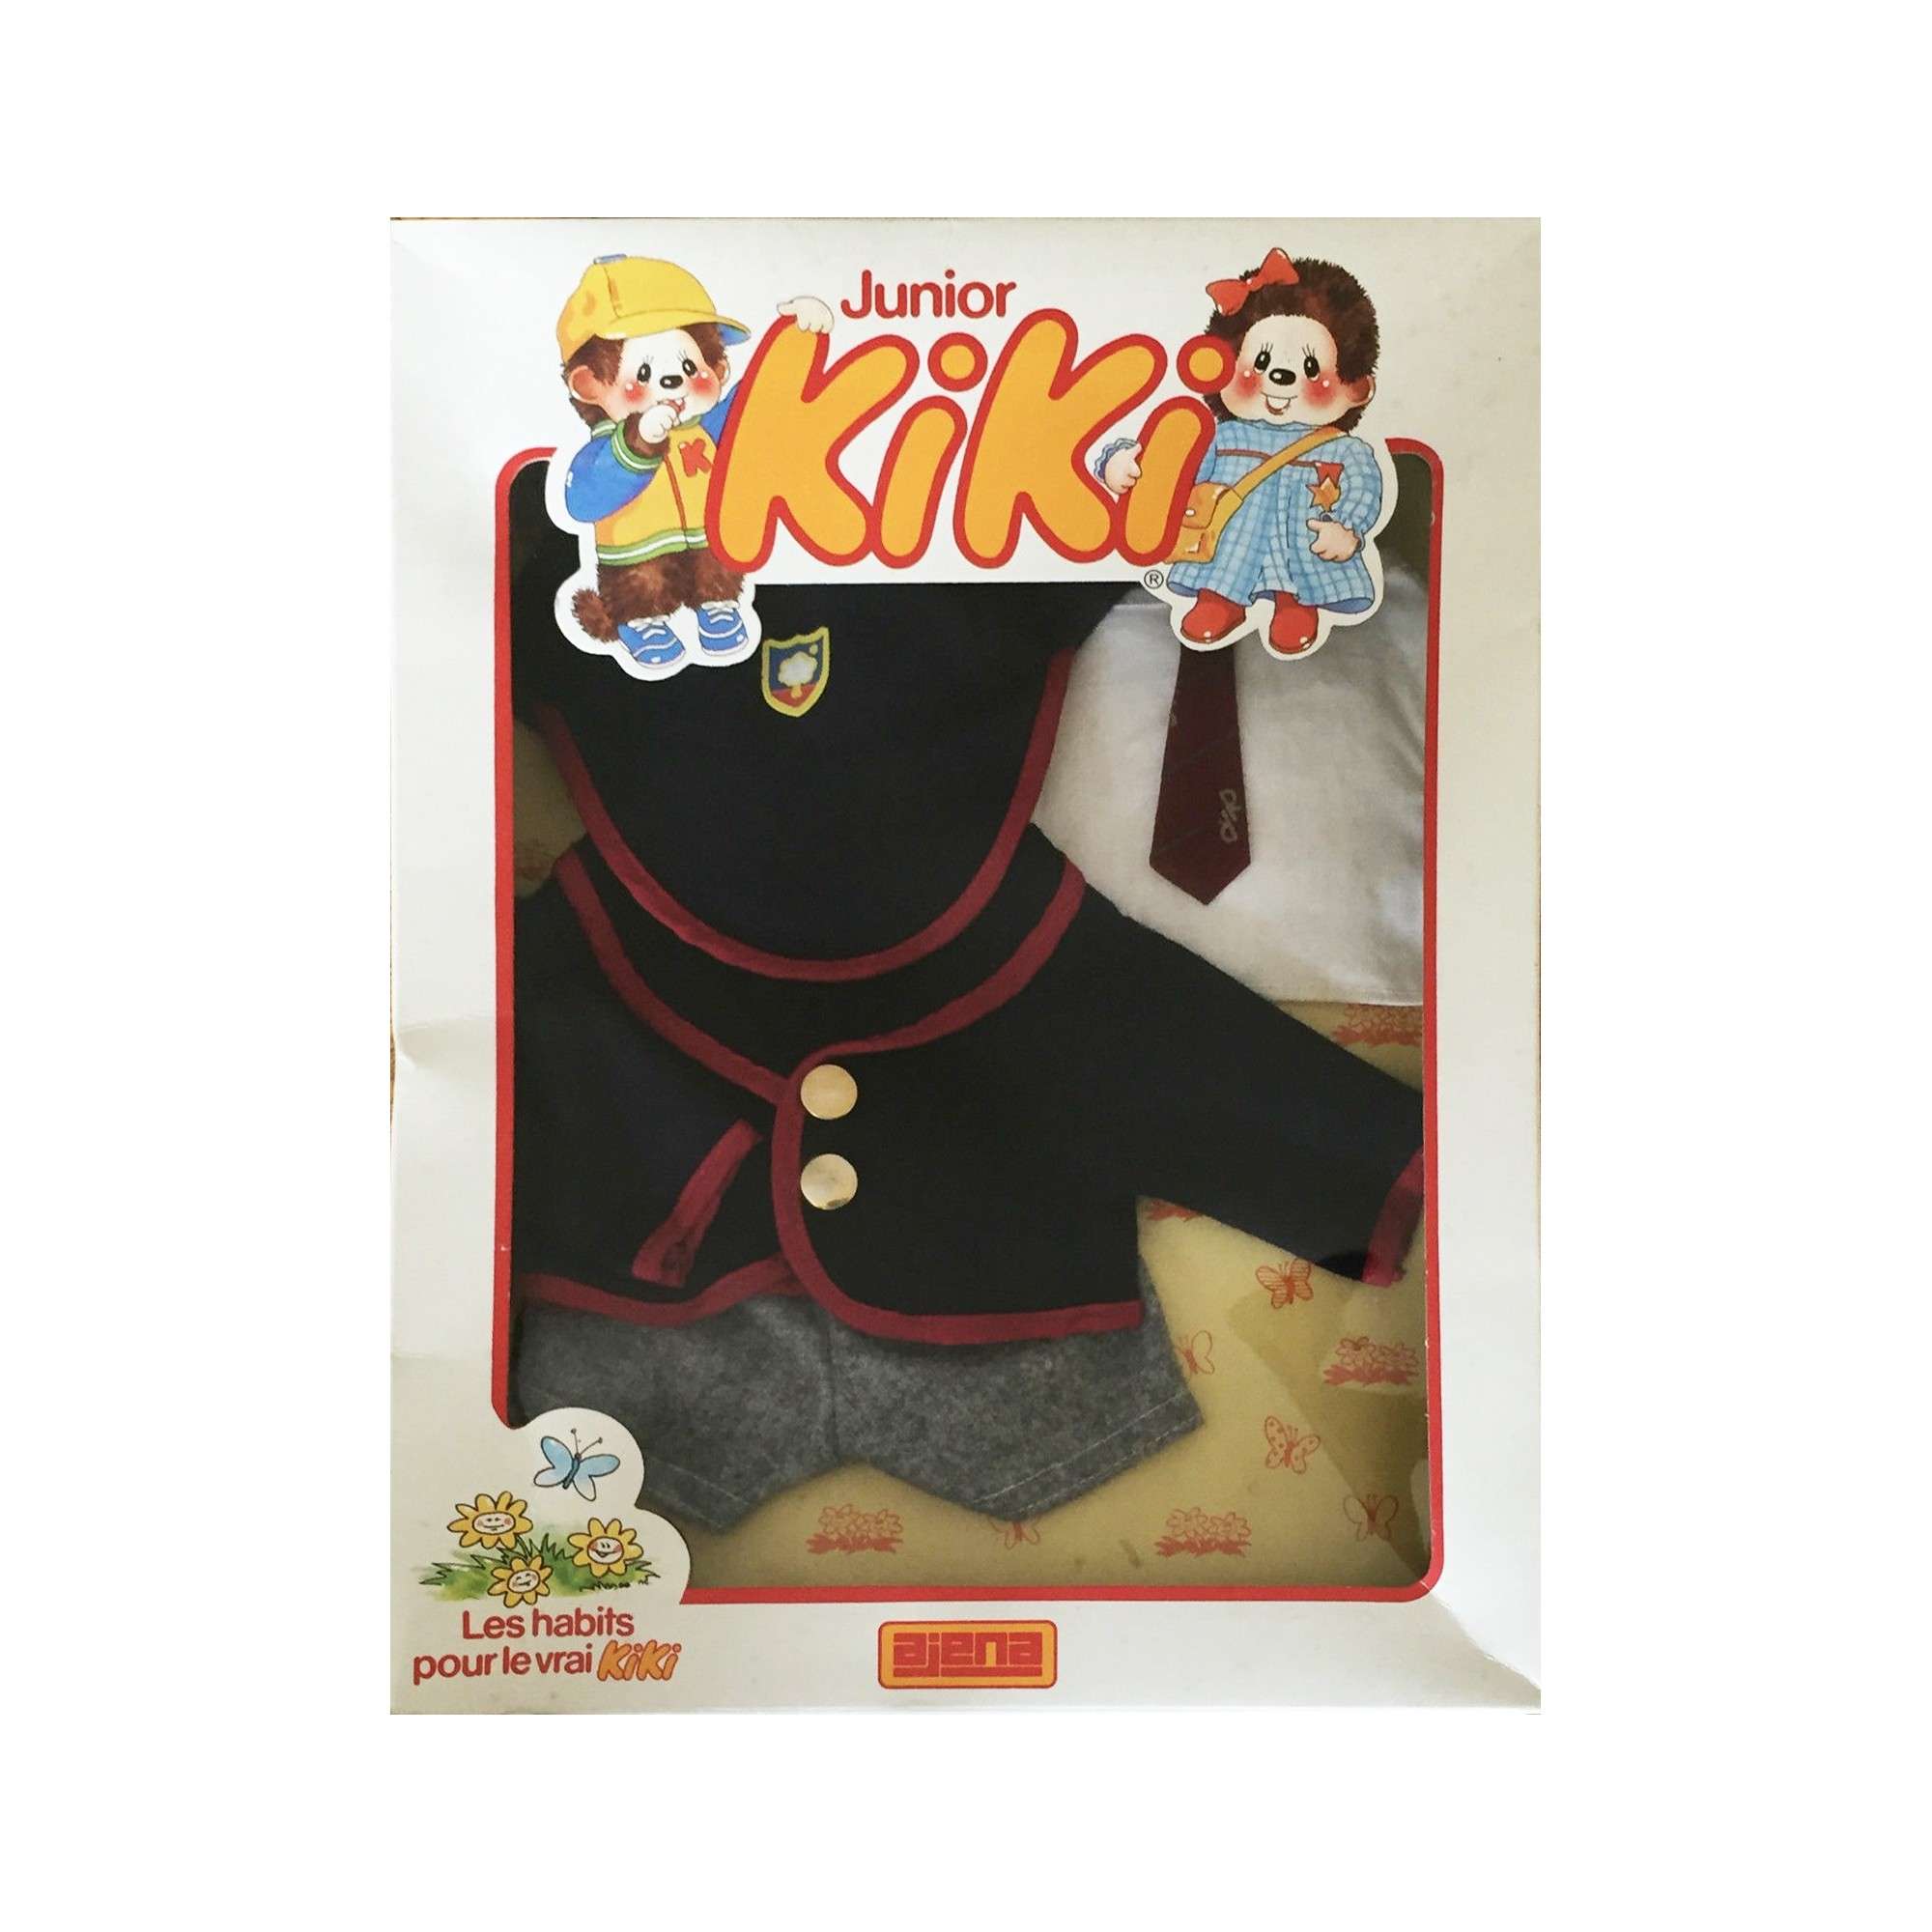 Vêtements Kiki et accessoires Kiki - Kikishop